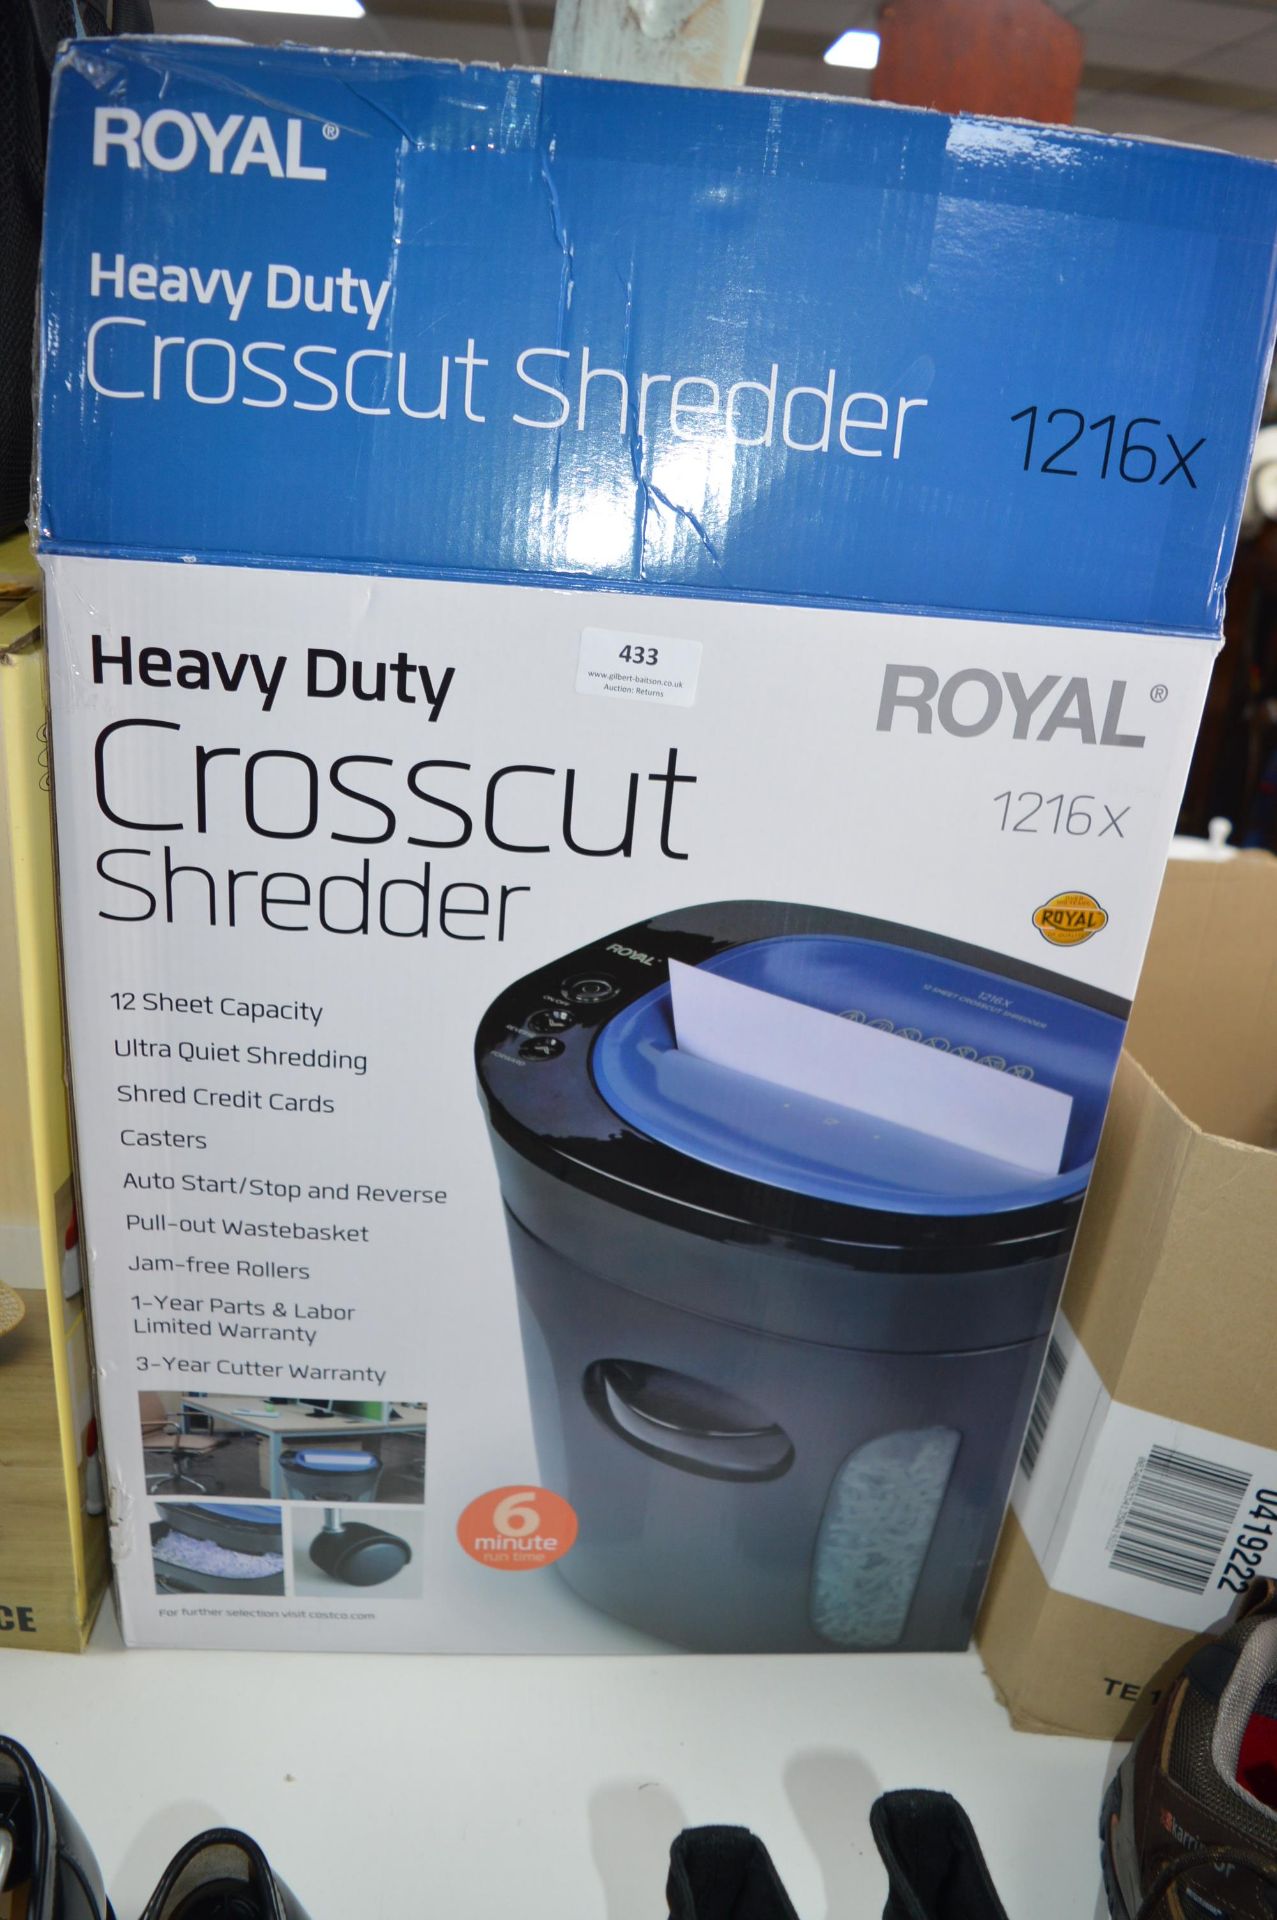 *Royal Heavy Duty Cross Cut Shredder